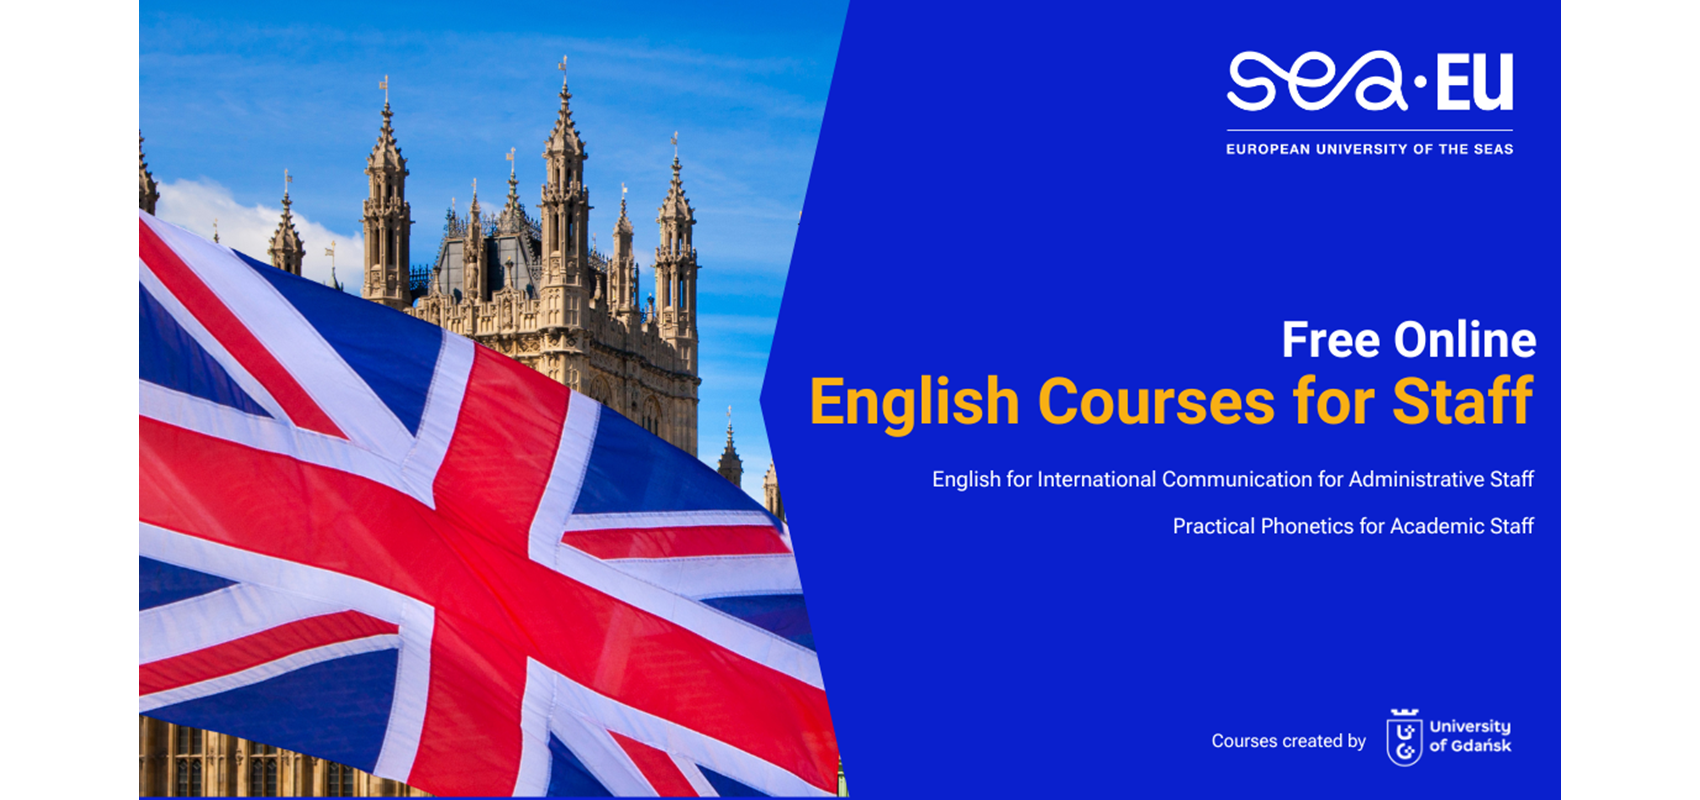 Besplatni tečajevi engleskog jezika za nastavno i administrativno osoblje Sveučilišta!